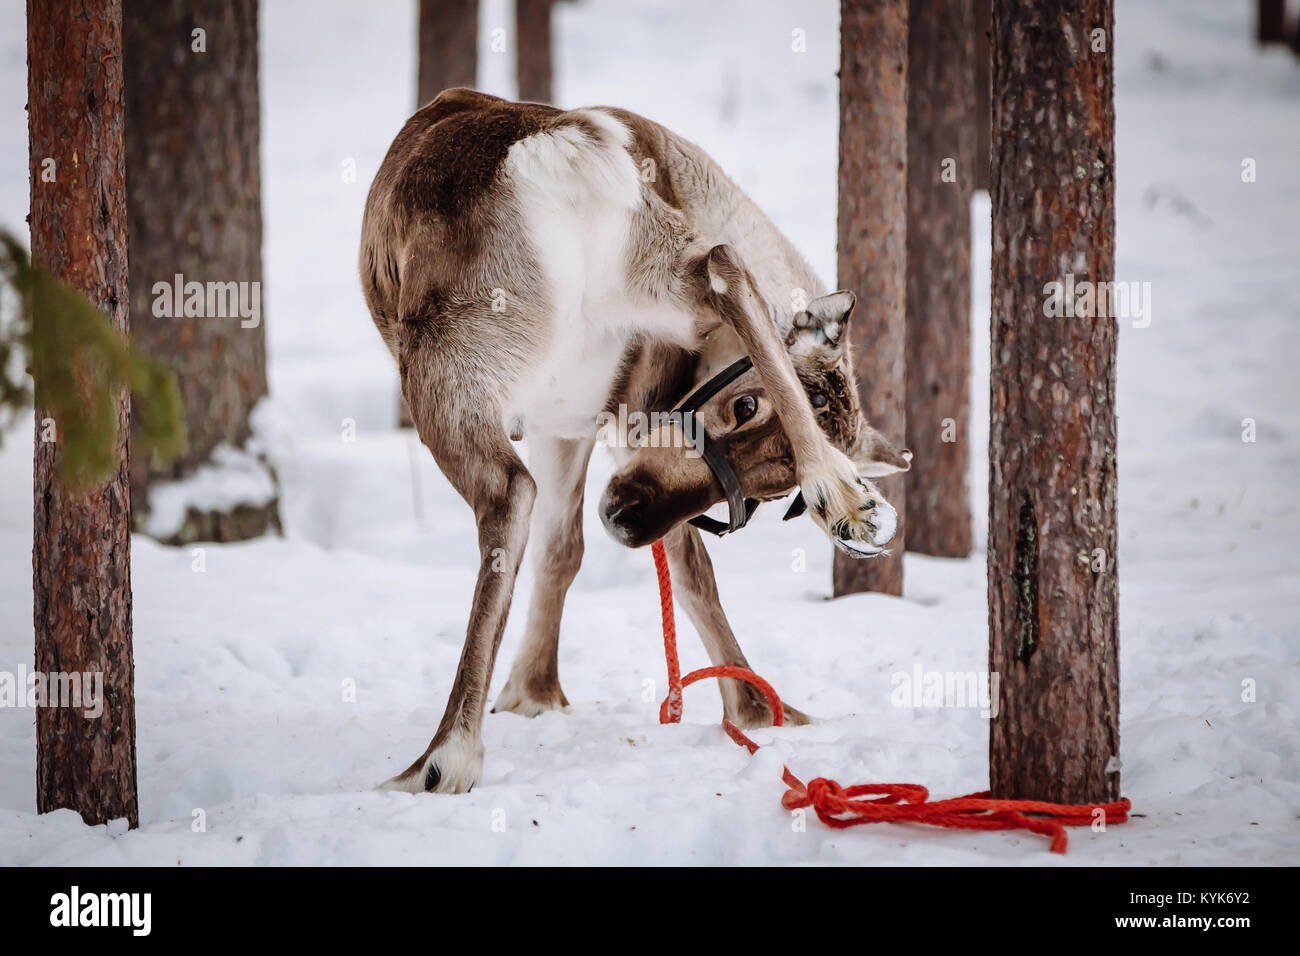 Le renne est un des symboles de la Laponie finlandaise. Levi. Banque D'Images